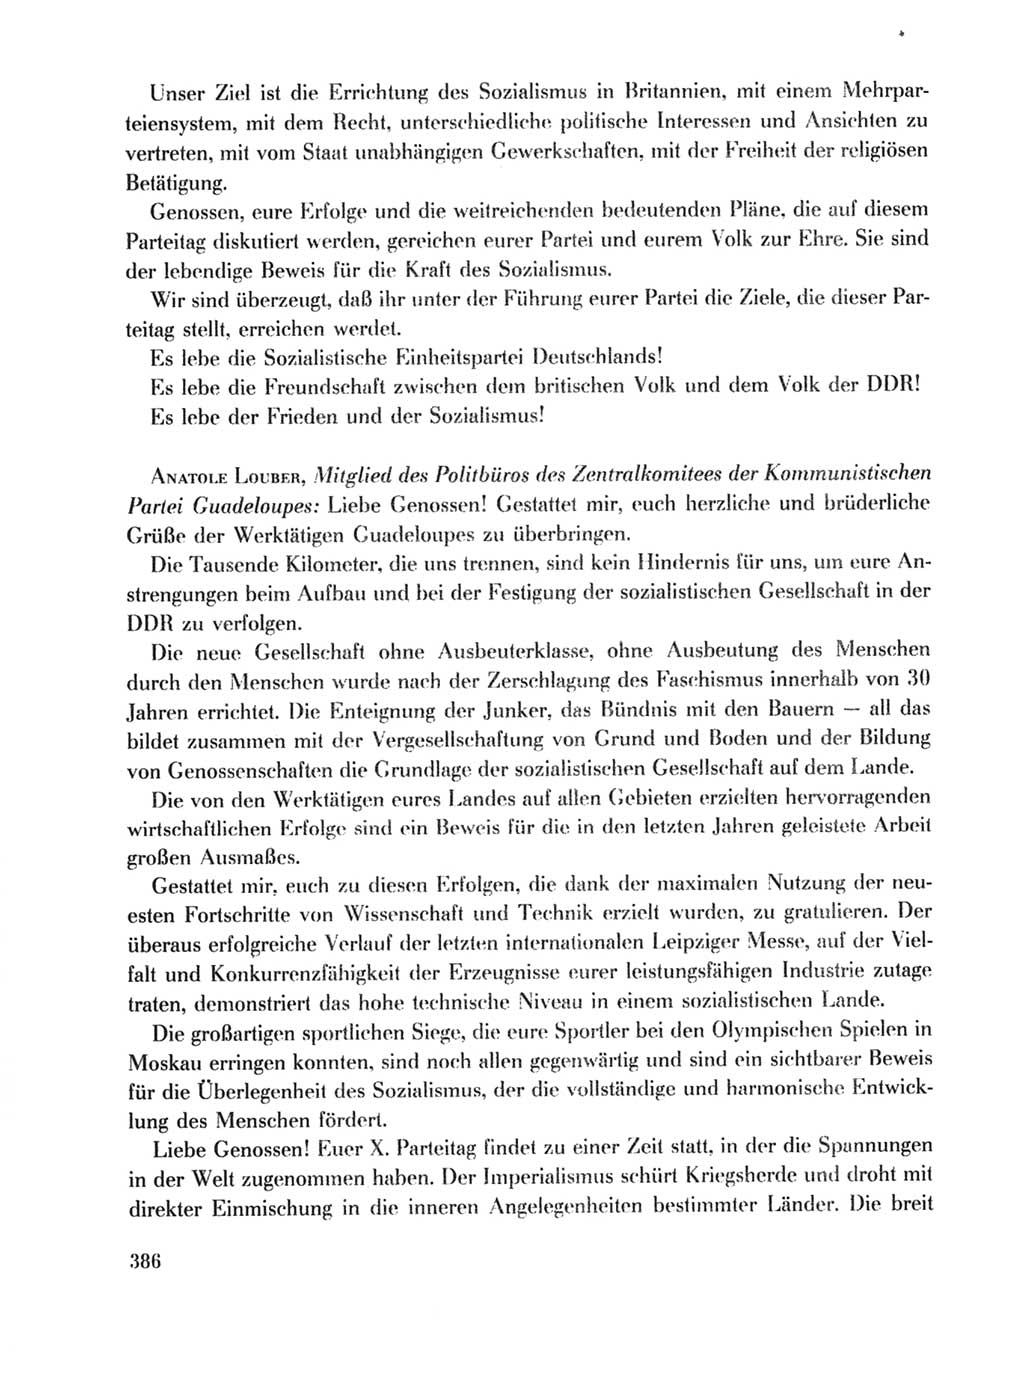 Protokoll der Verhandlungen des Ⅹ. Parteitages der Sozialistischen Einheitspartei Deutschlands (SED) [Deutsche Demokratische Republik (DDR)] 1981, Band 1, Seite 386 (Prot. Verh. Ⅹ. PT SED DDR 1981, Bd. 1, S. 386)